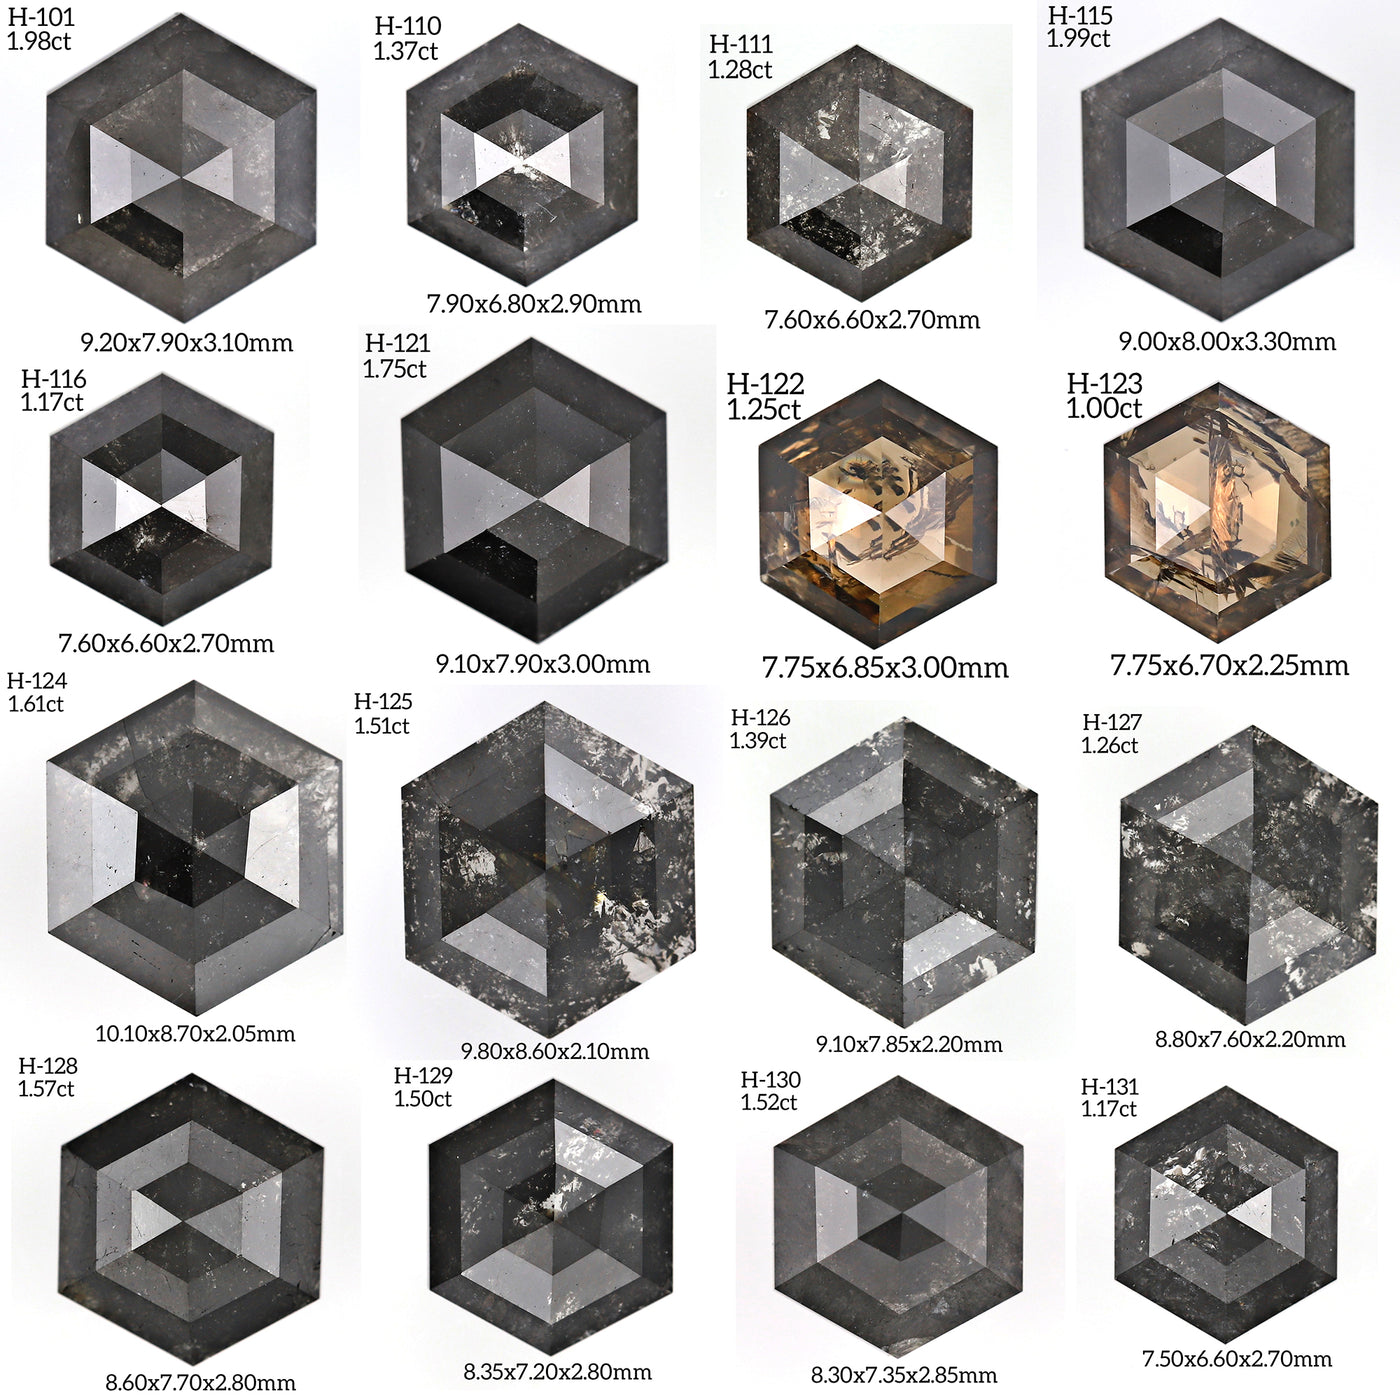 H240 - Salt and pepper hexagon diamond